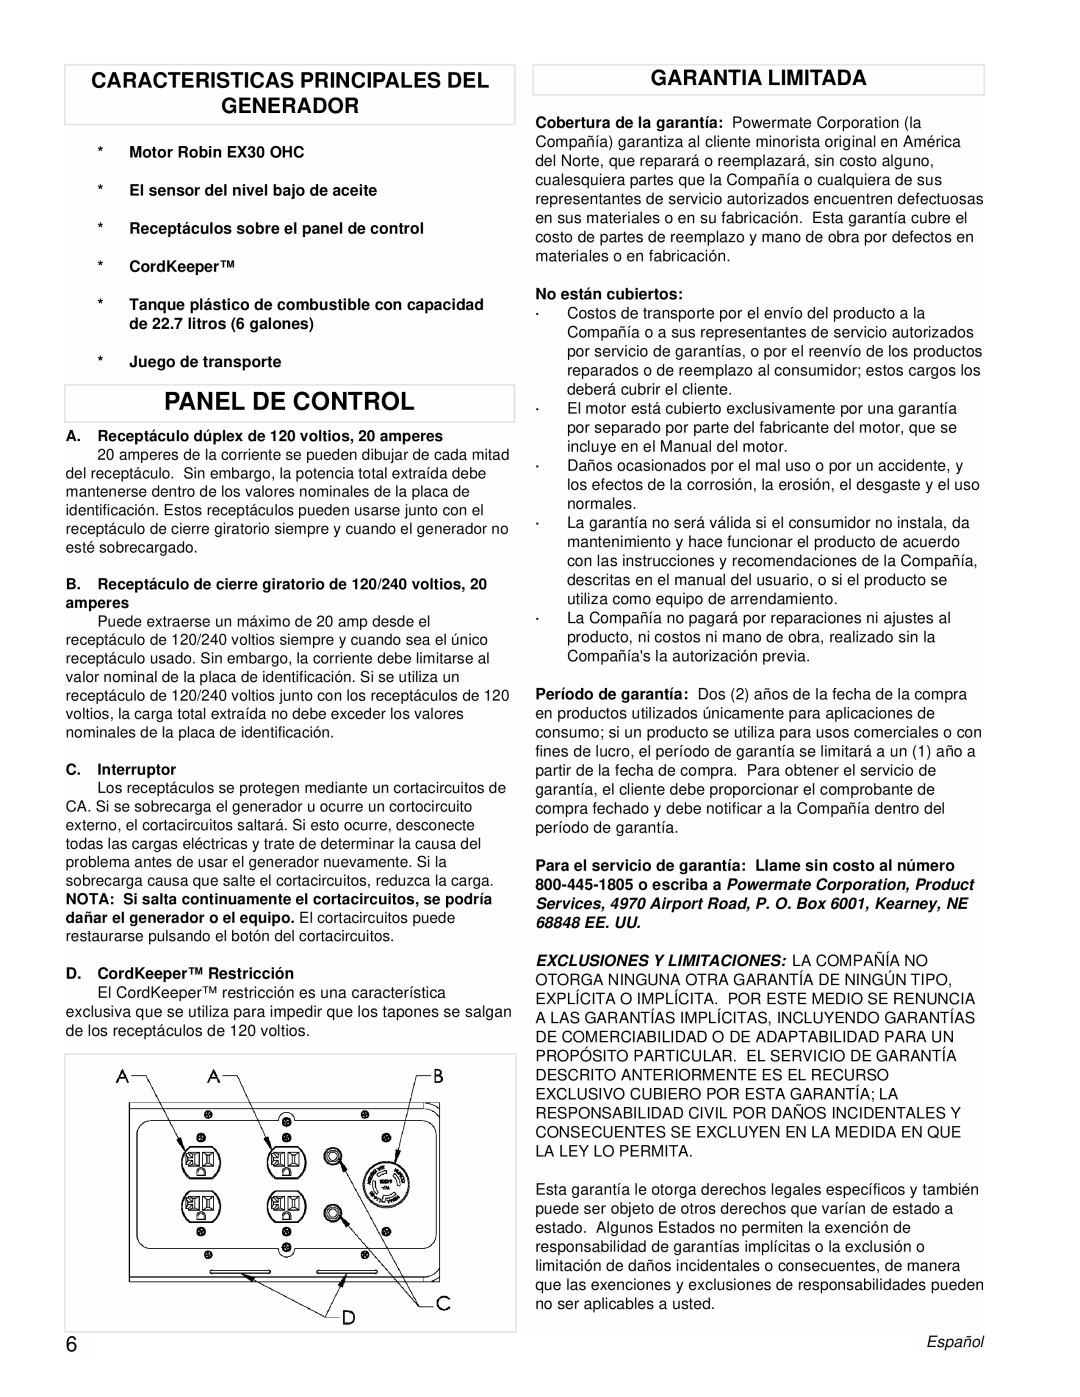 Powermate PM0435003 manual Panel De Control, Caracteristicas Principales Del Generador, Garantia Limitada 